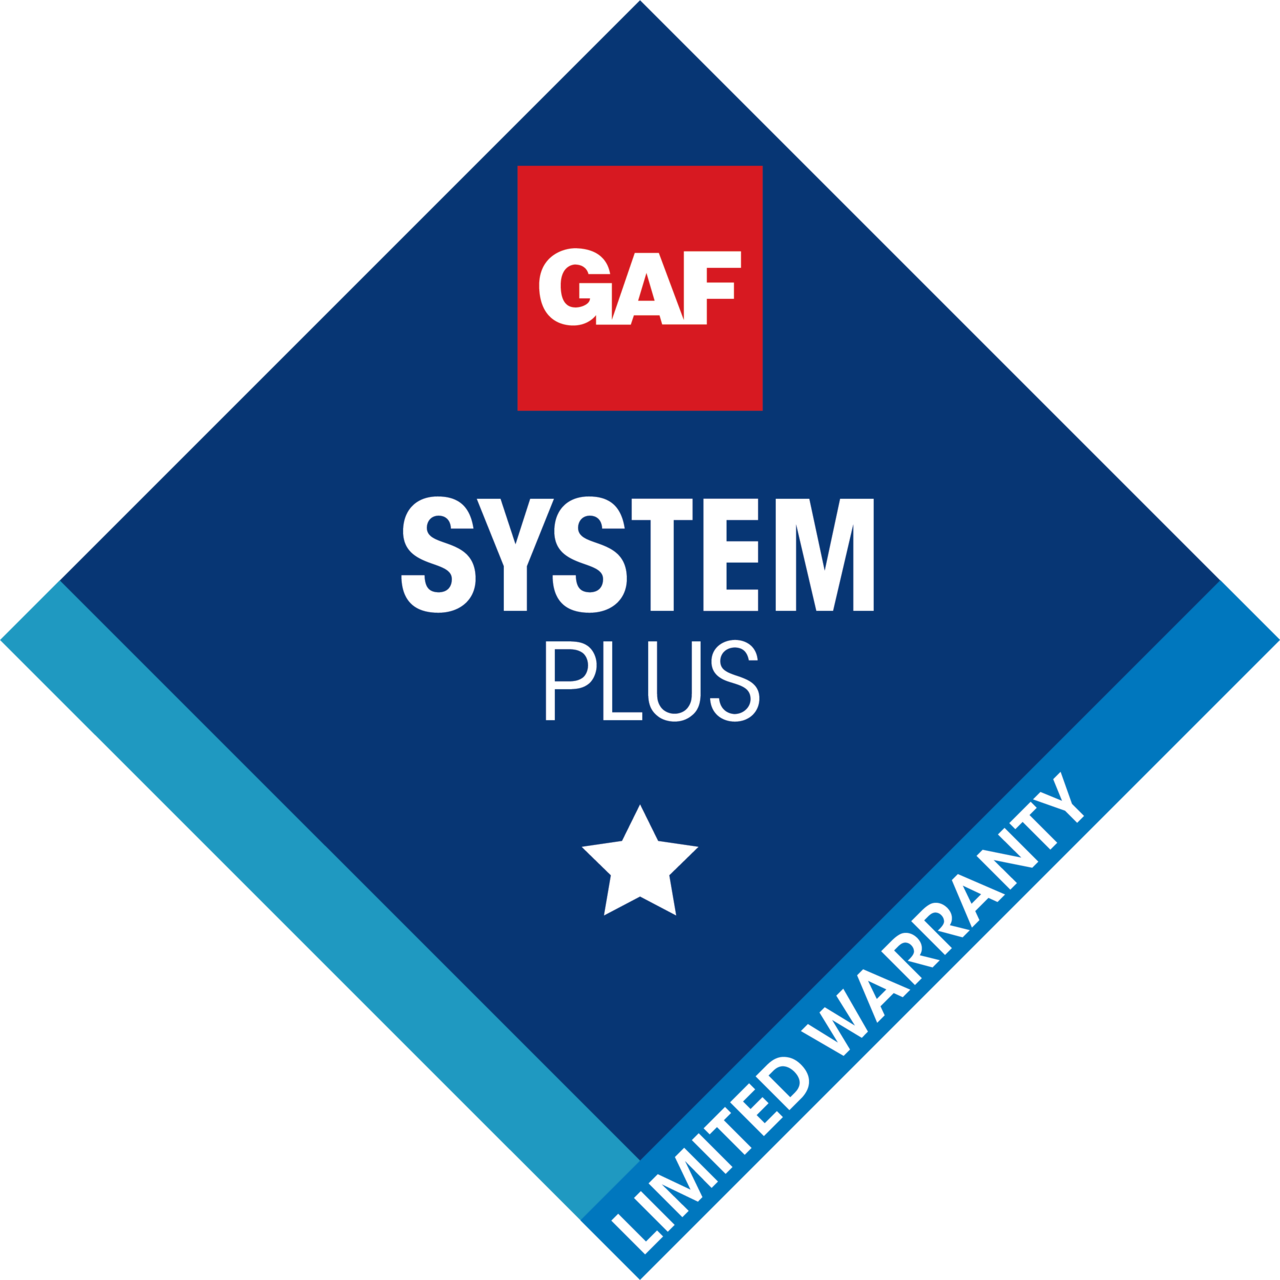 gaf system plus logo